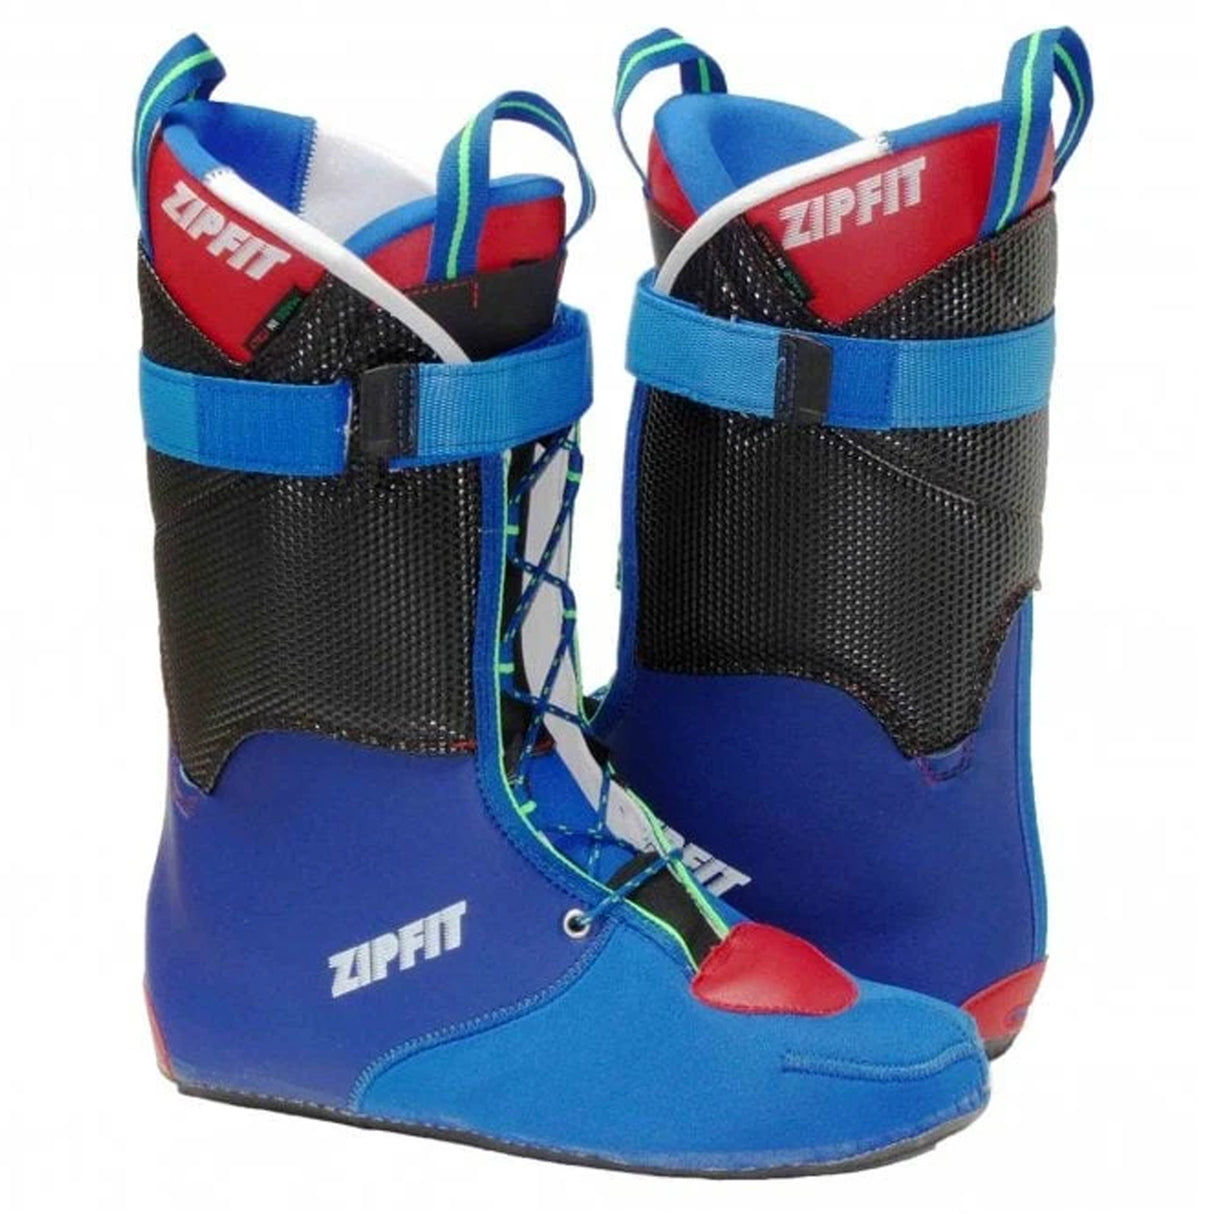 Doublures de chaussures de ski Zipfit Gara Stealth